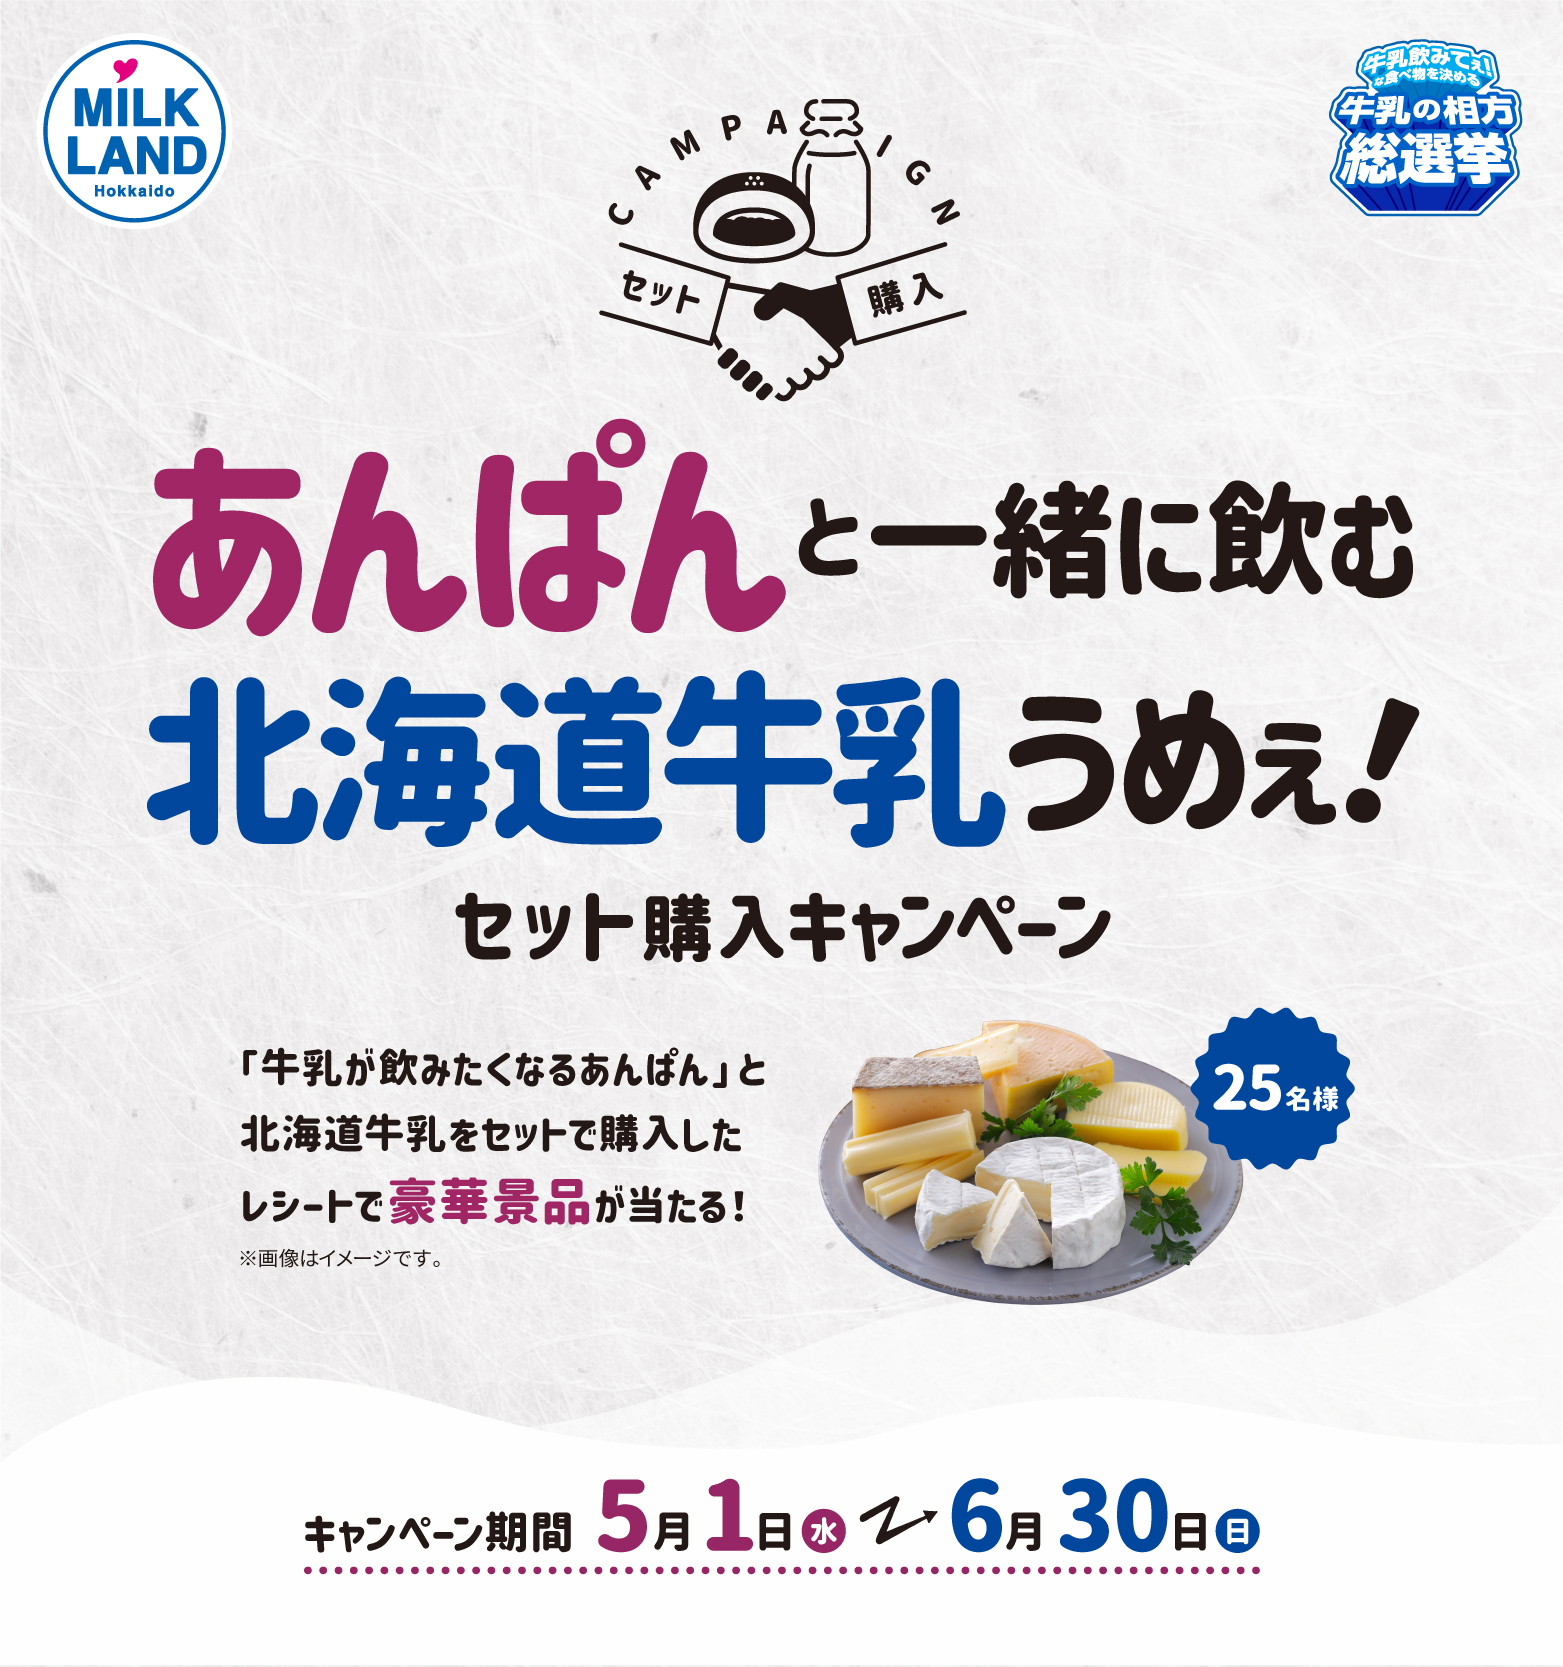 ＼北海道の特産品を当てよう／あんぱんと一緒に飲む北海道牛乳うめぇ！セット購入キャンペーンイトル